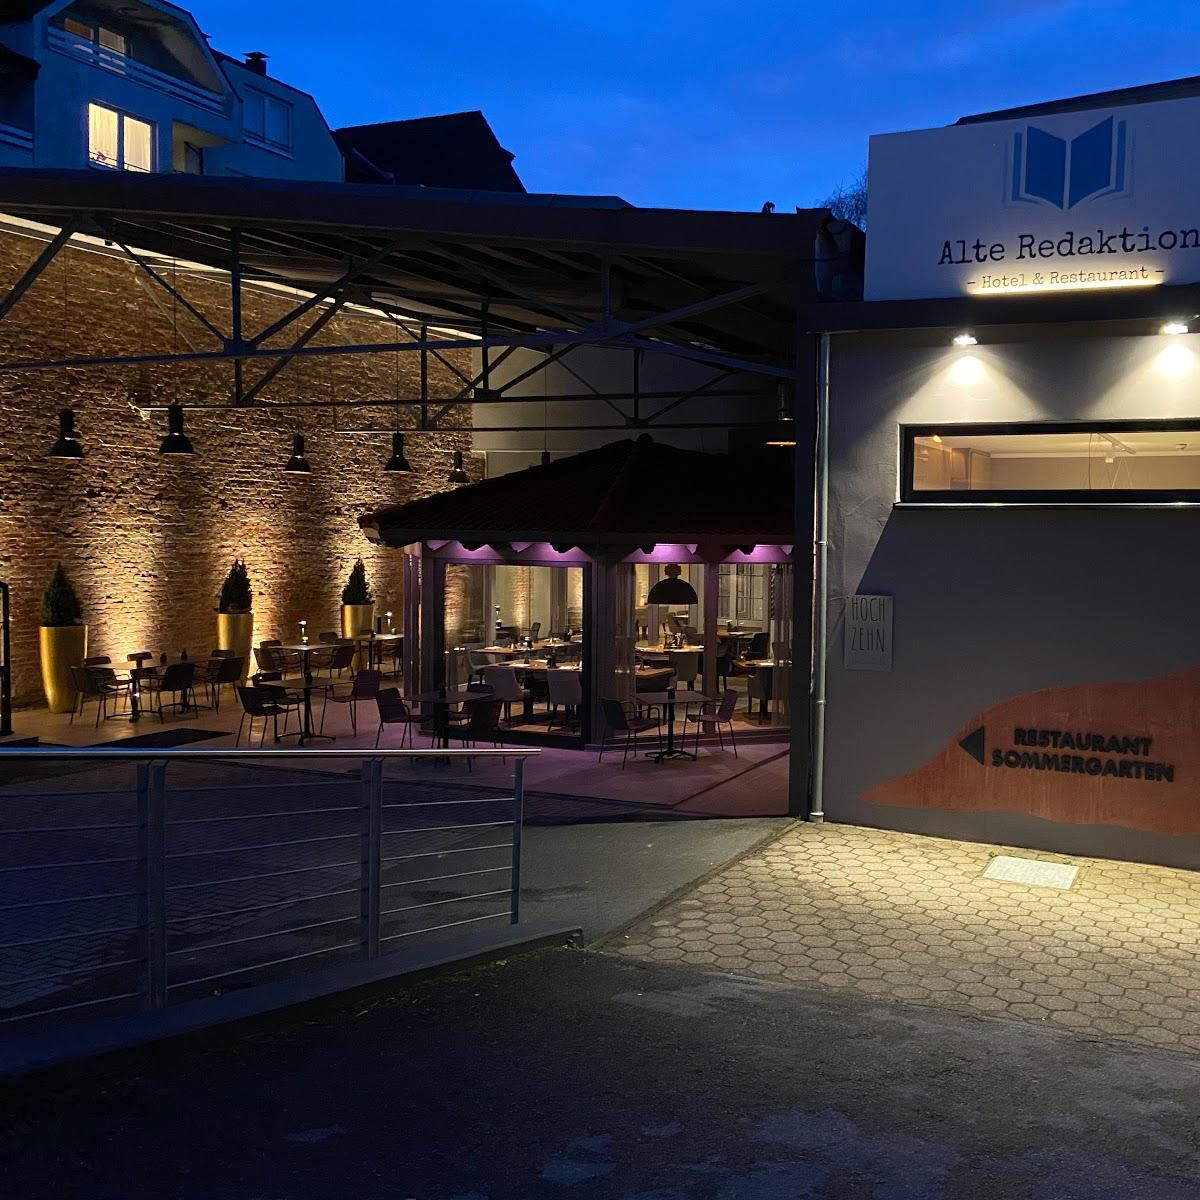 Restaurant "Hotel Alte Redaktion" in Gevelsberg